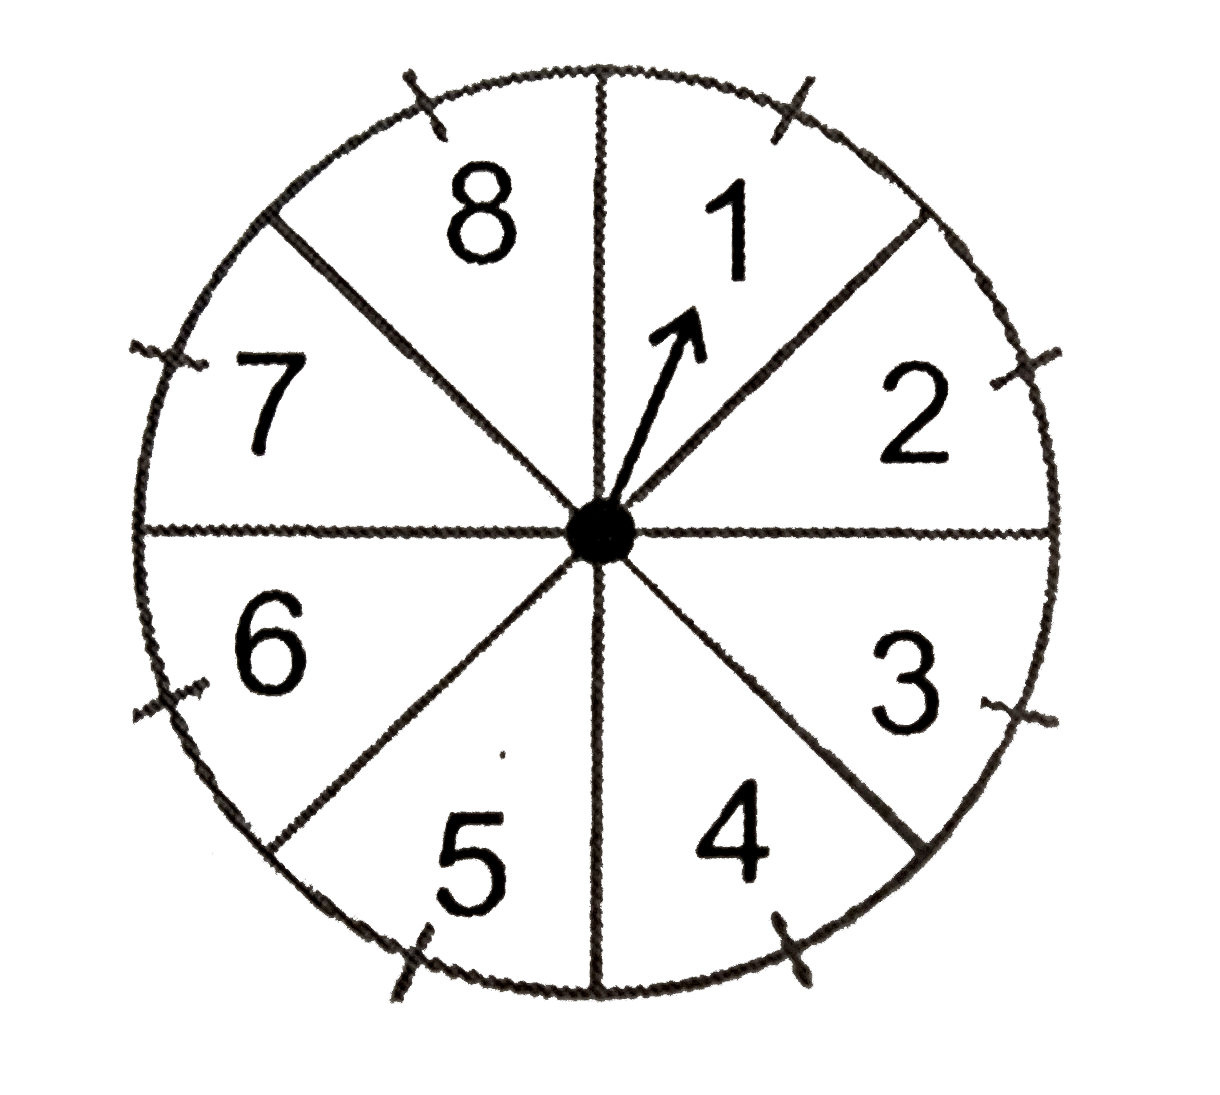 संयोग के एक खेल में एक तीर को घुमाया हाता है जो विश्राम में आने के बाद संख्याओं 1,2,3,4,5,6,7 और 8 में से किसी एक संख्या को इंगित करता है। यदि ये सभी परिणाम समप्रायिक हों तो इसकी क्या प्रायिकता है कि यह तीर इंगित    (i) 8 को करेगा?   (ii) एक विषम संख्या को करेगा?   (iii) 2 से बड़ी संख्या को करेगा   (iv) 9 से छोटी संख्या को करेगा?